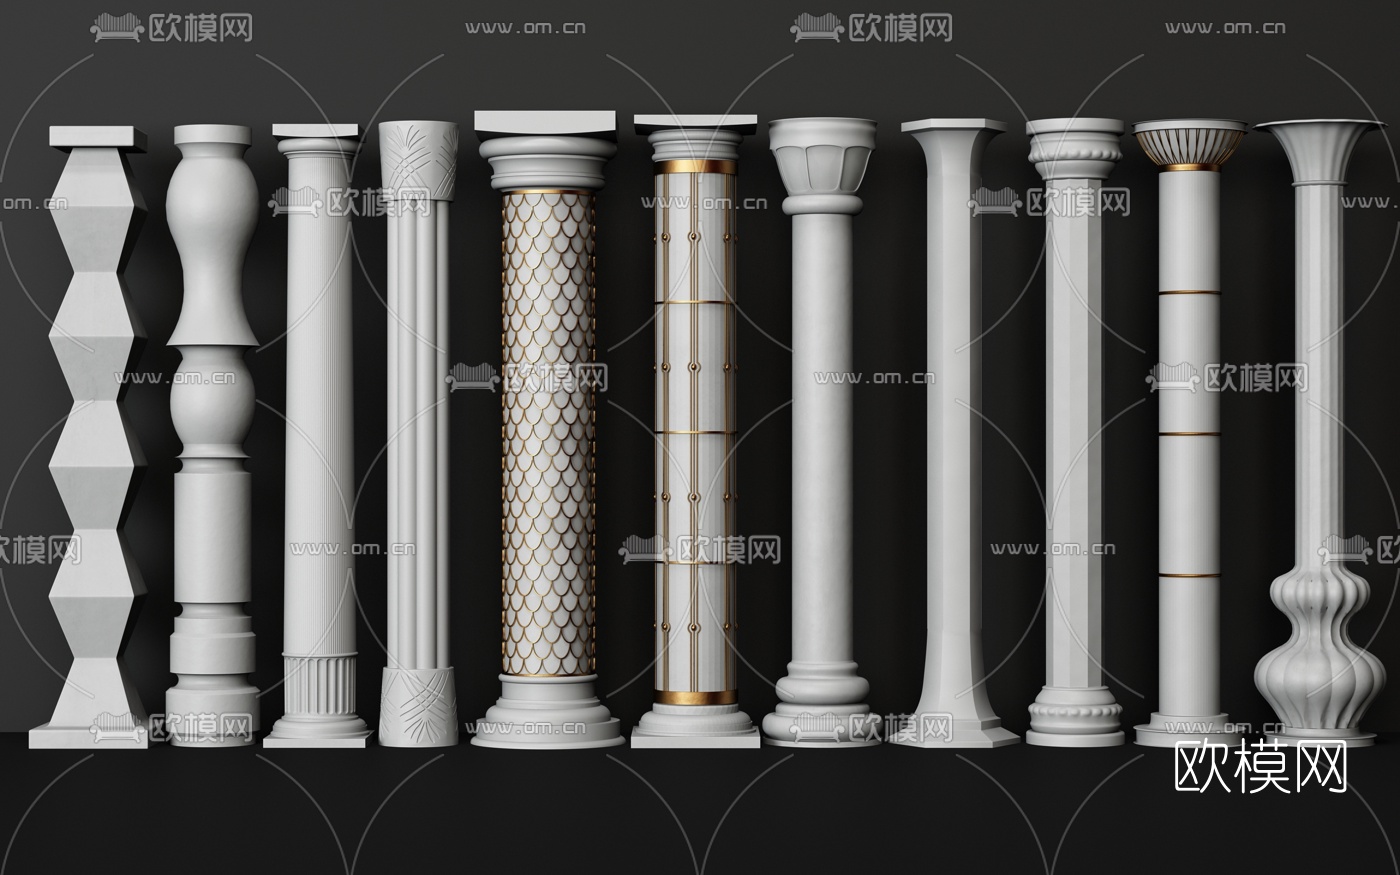 中式柱子,盘龙纹雕刻,方形底座柱子座底座3d模型下载-【集简空间】「每日更新」